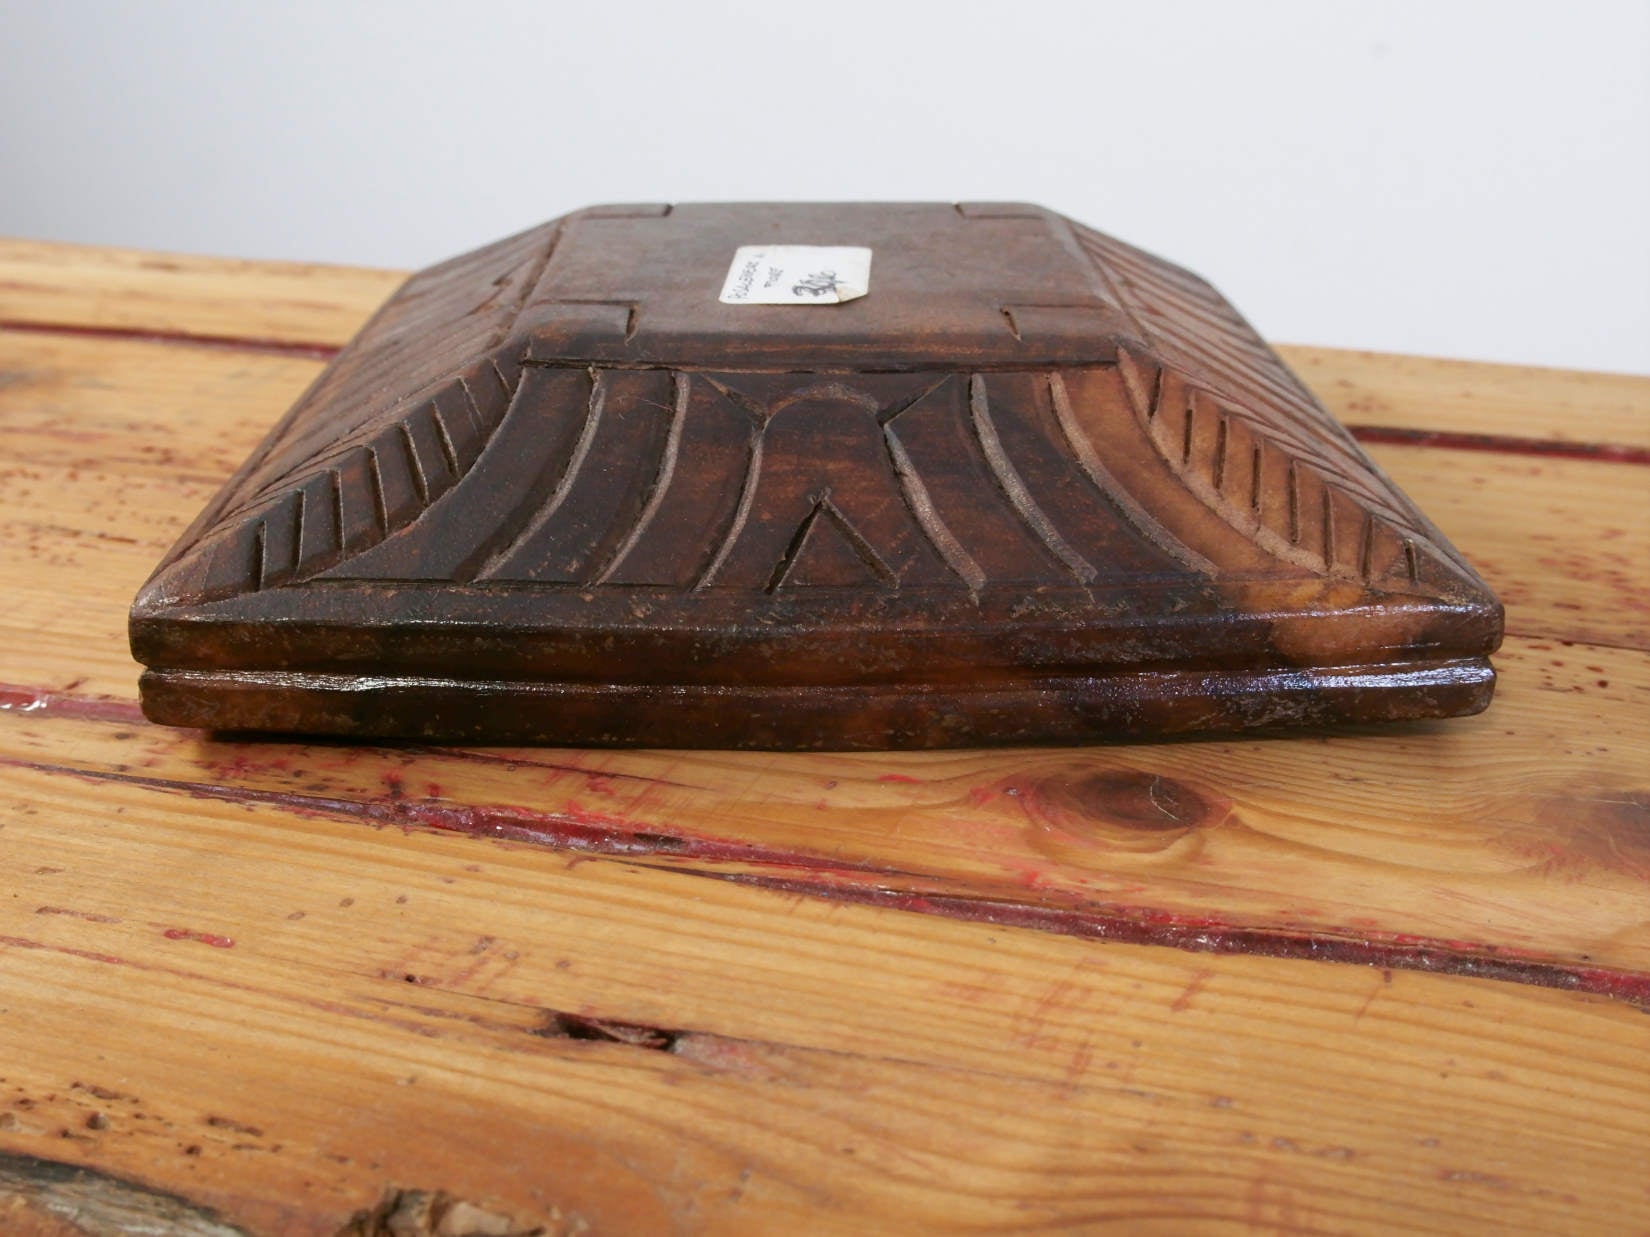 legno di teak inciso  uso portacandele , pout pourri ...  lavorazione artigianale  spedizione italia compresa nel prez